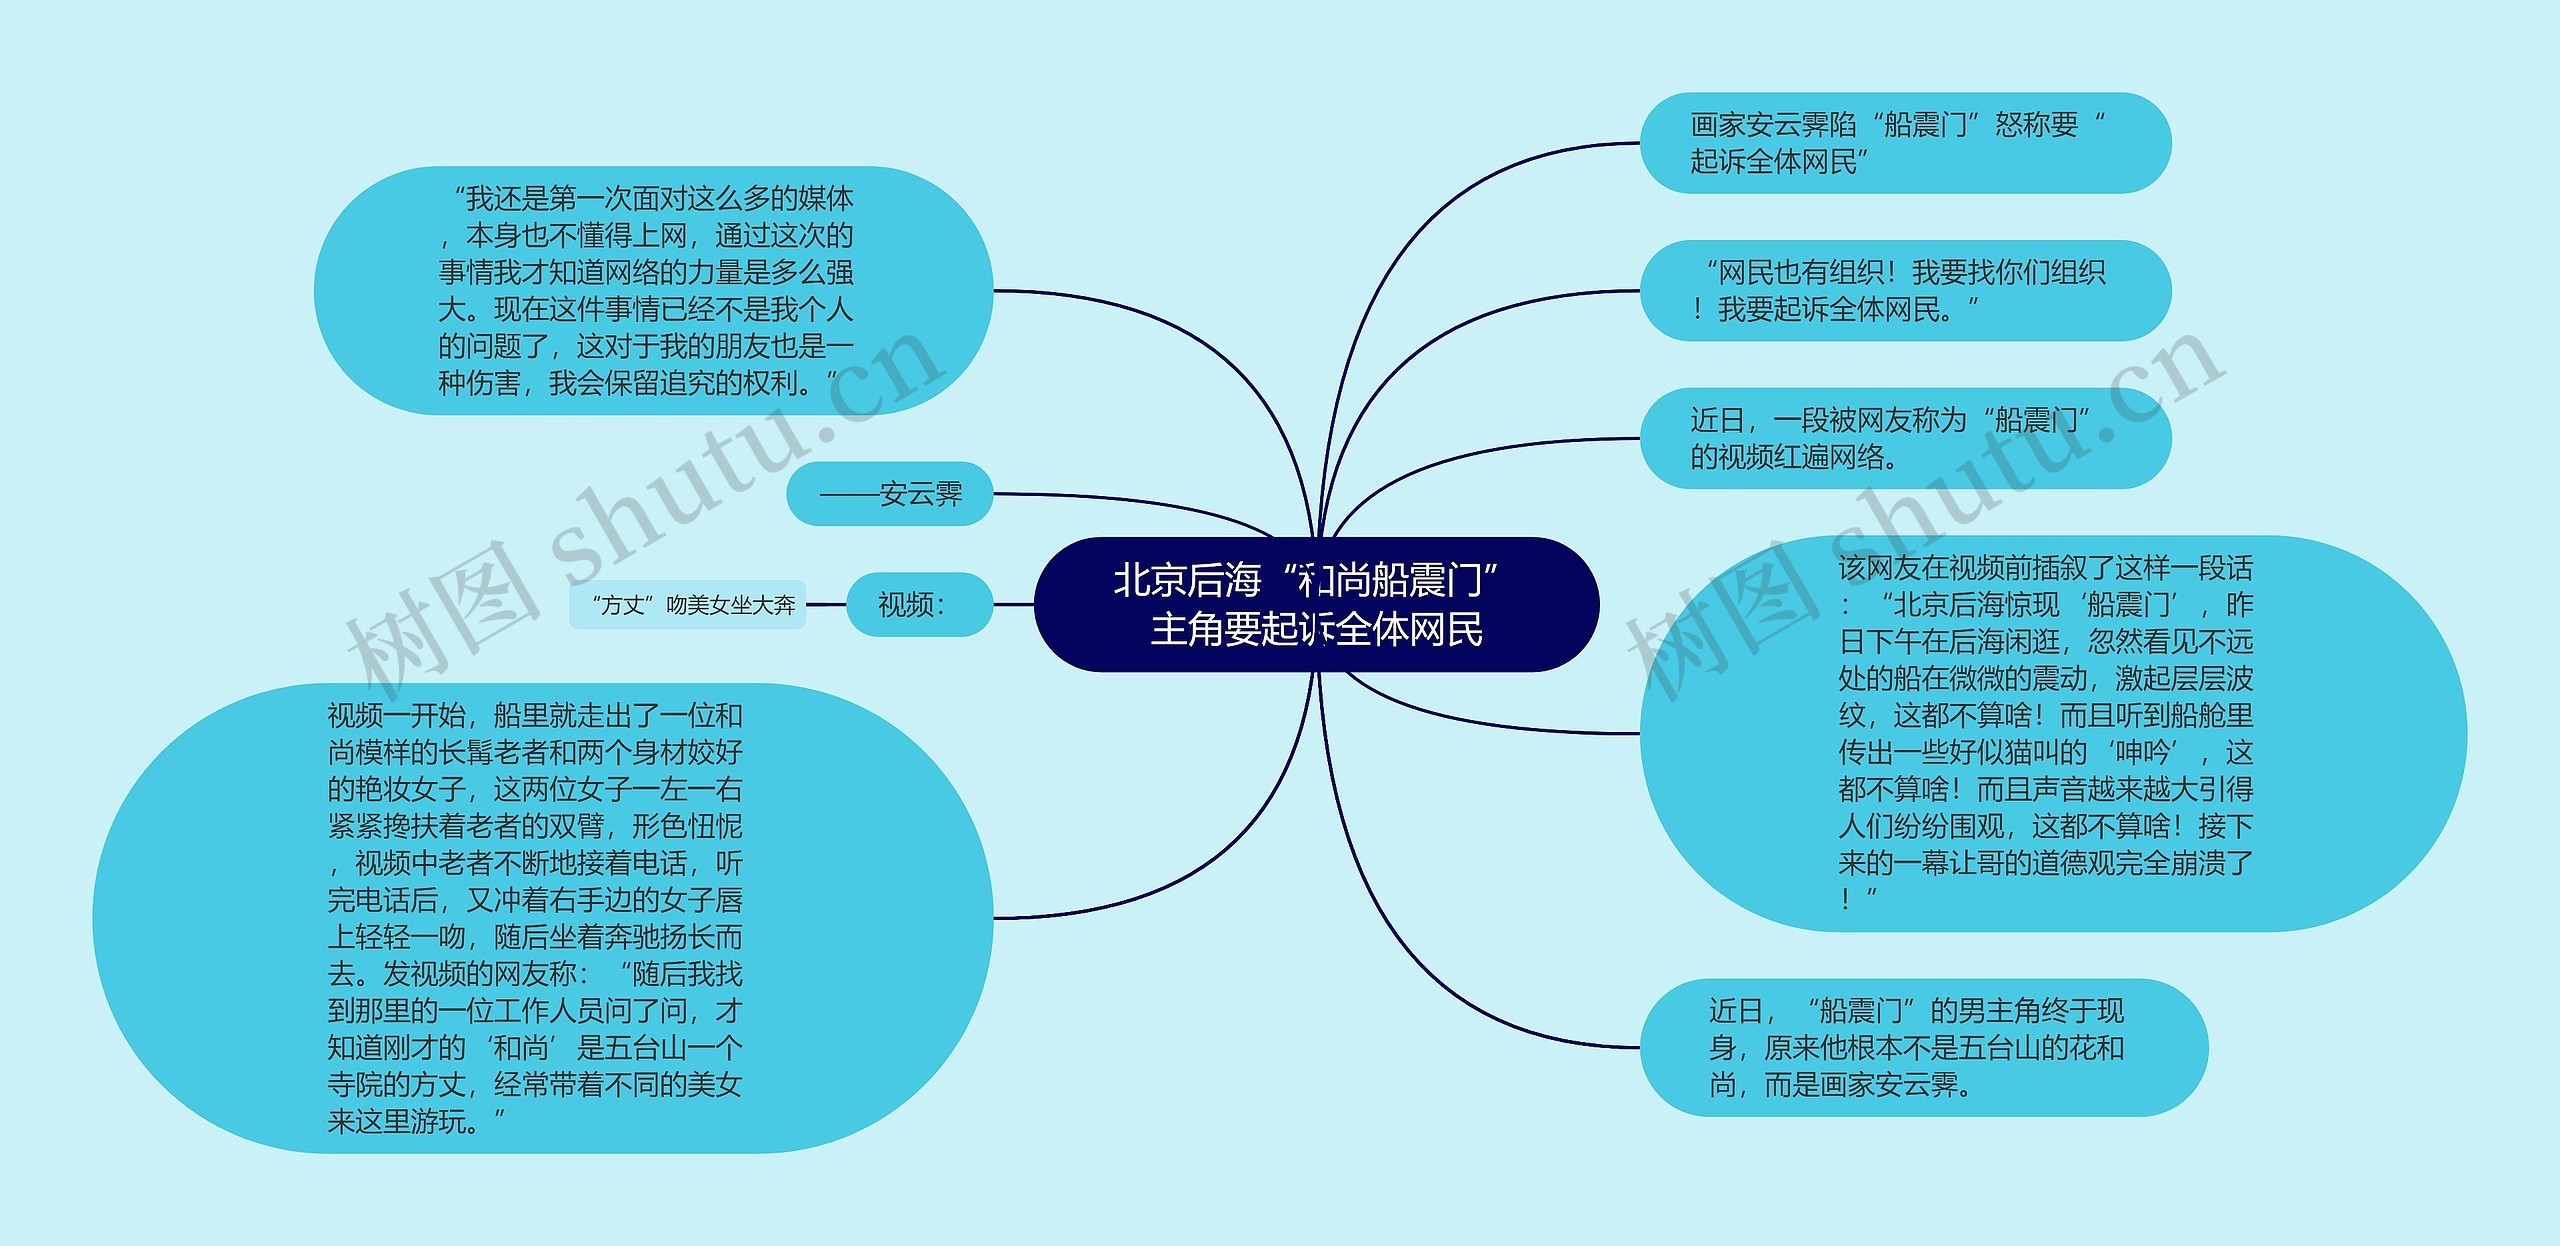 北京后海“和尚船震门”主角要起诉全体网民